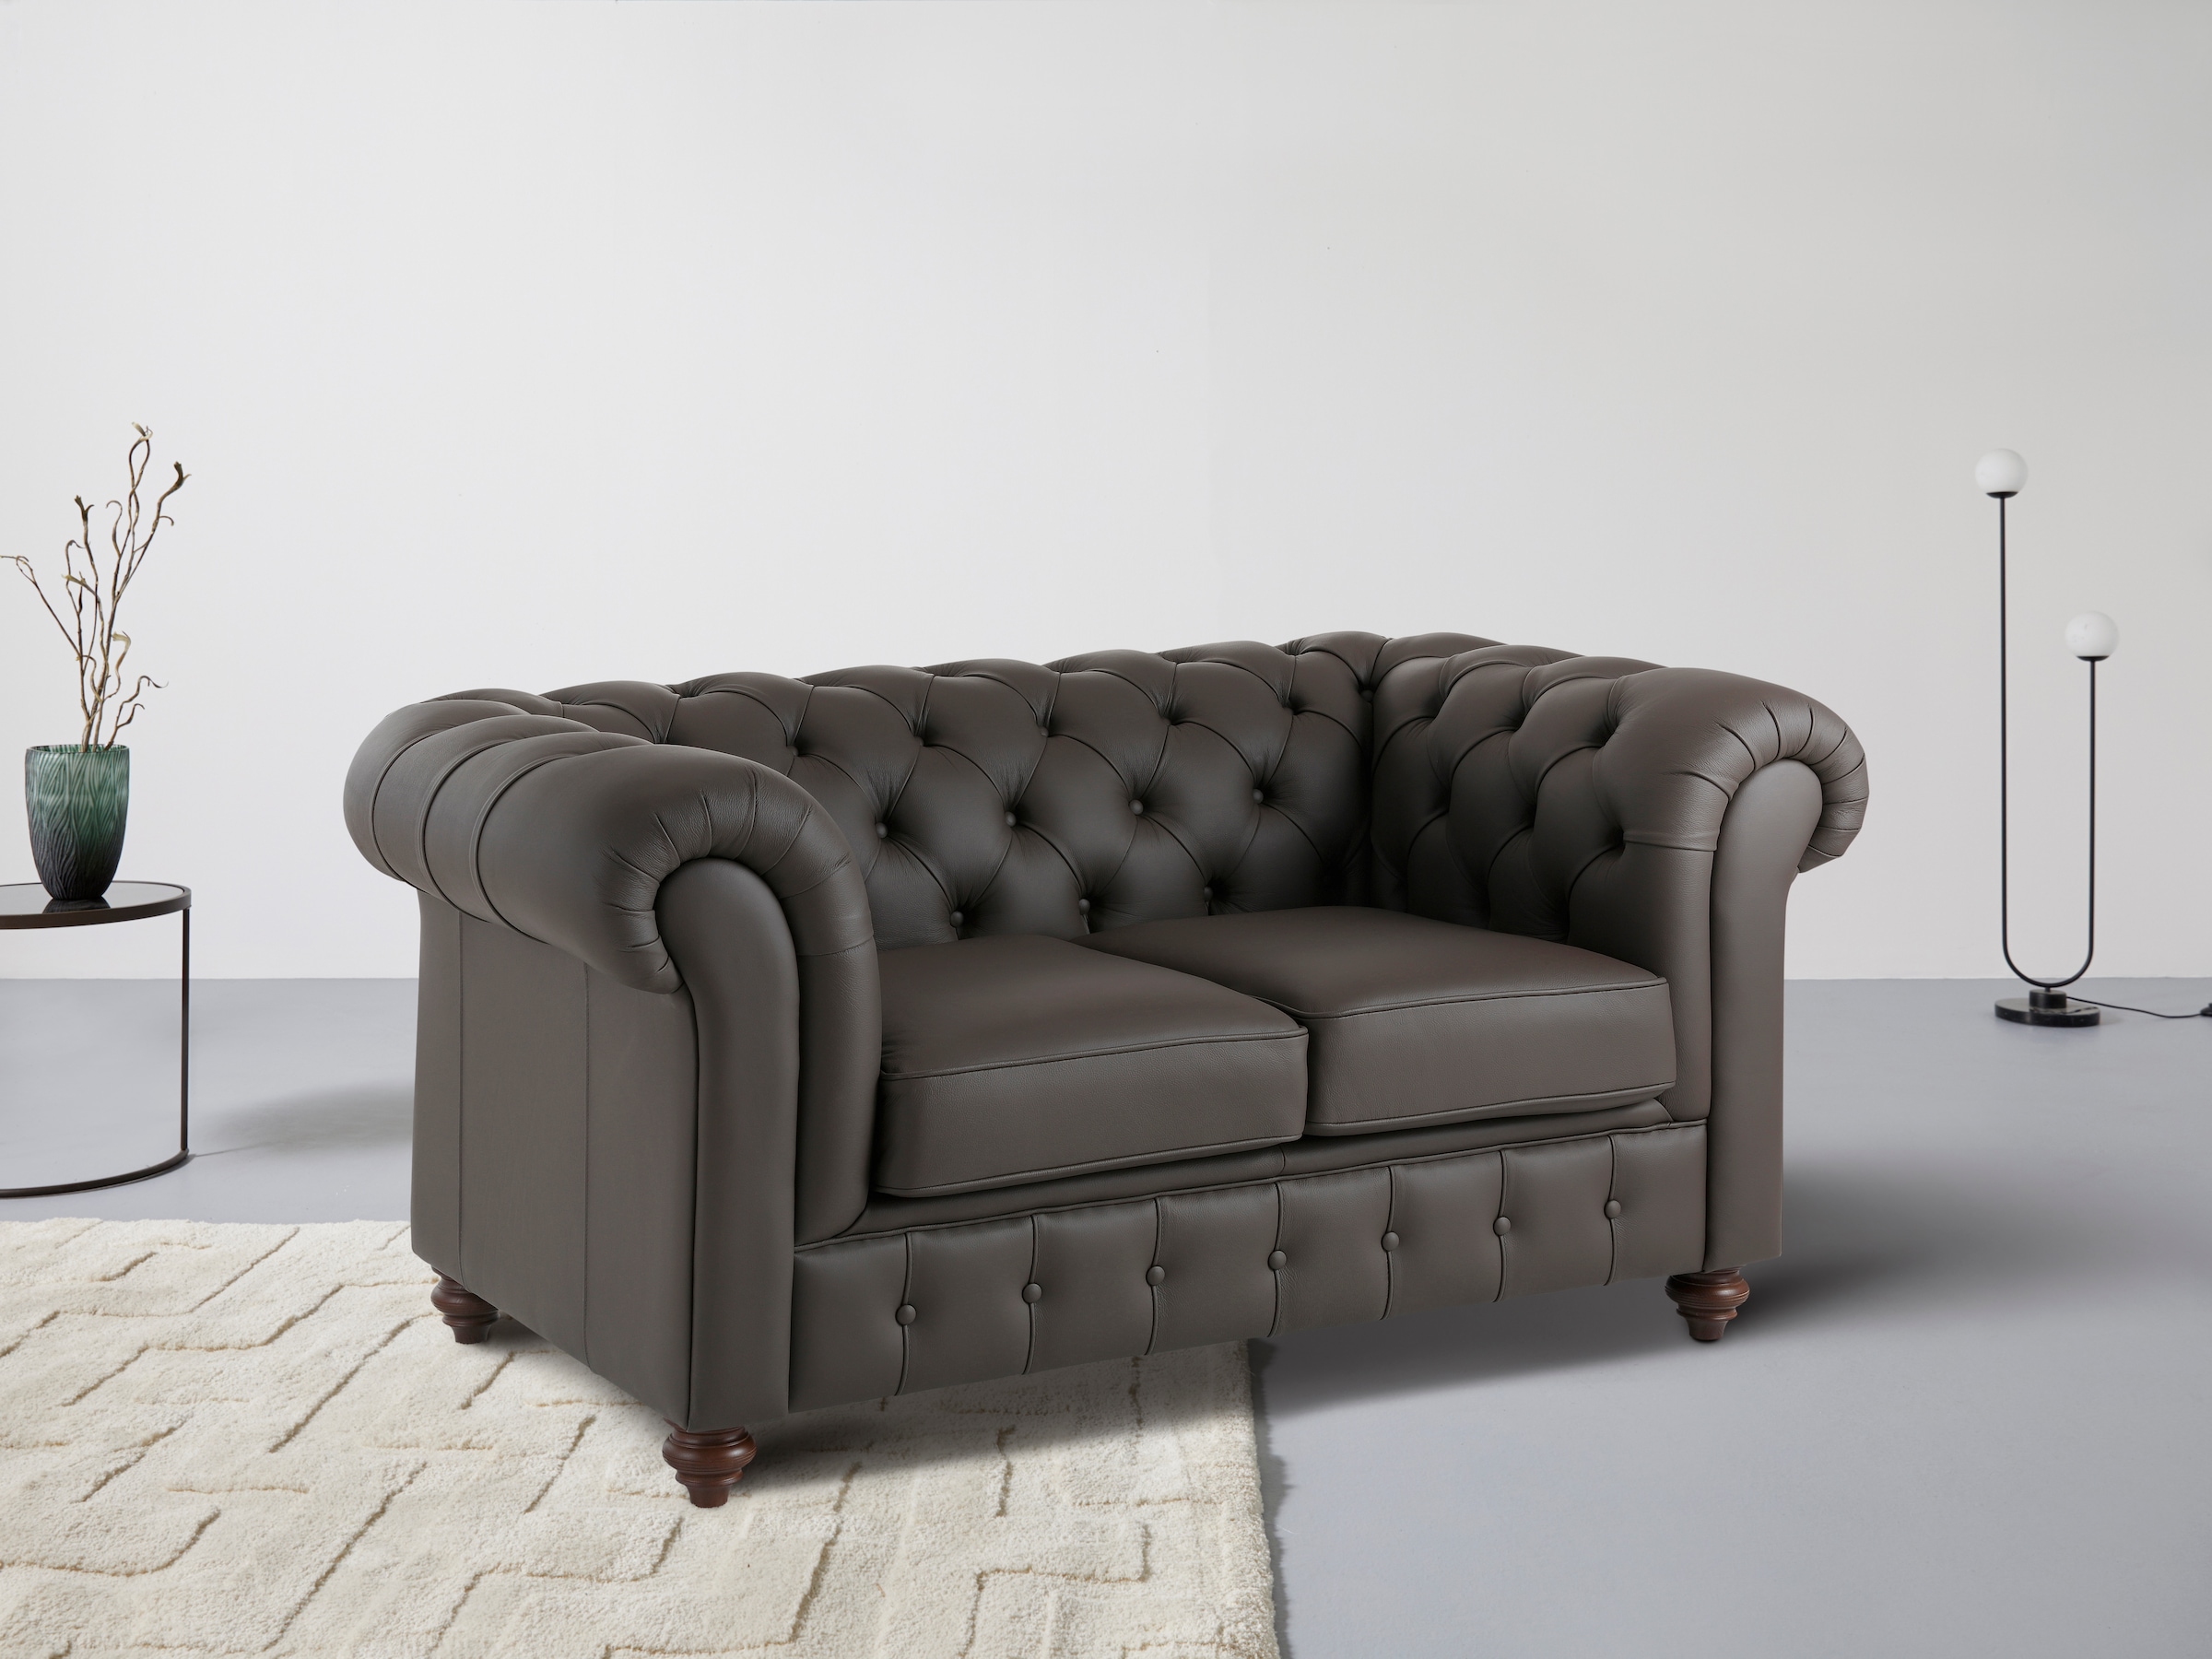 Home affaire Chesterfield-Sofa »Chesterfield 2-Sitzer B/T/H: 150/89/74 cm«, mit hochwertiger Knopfheftung, auch in Leder